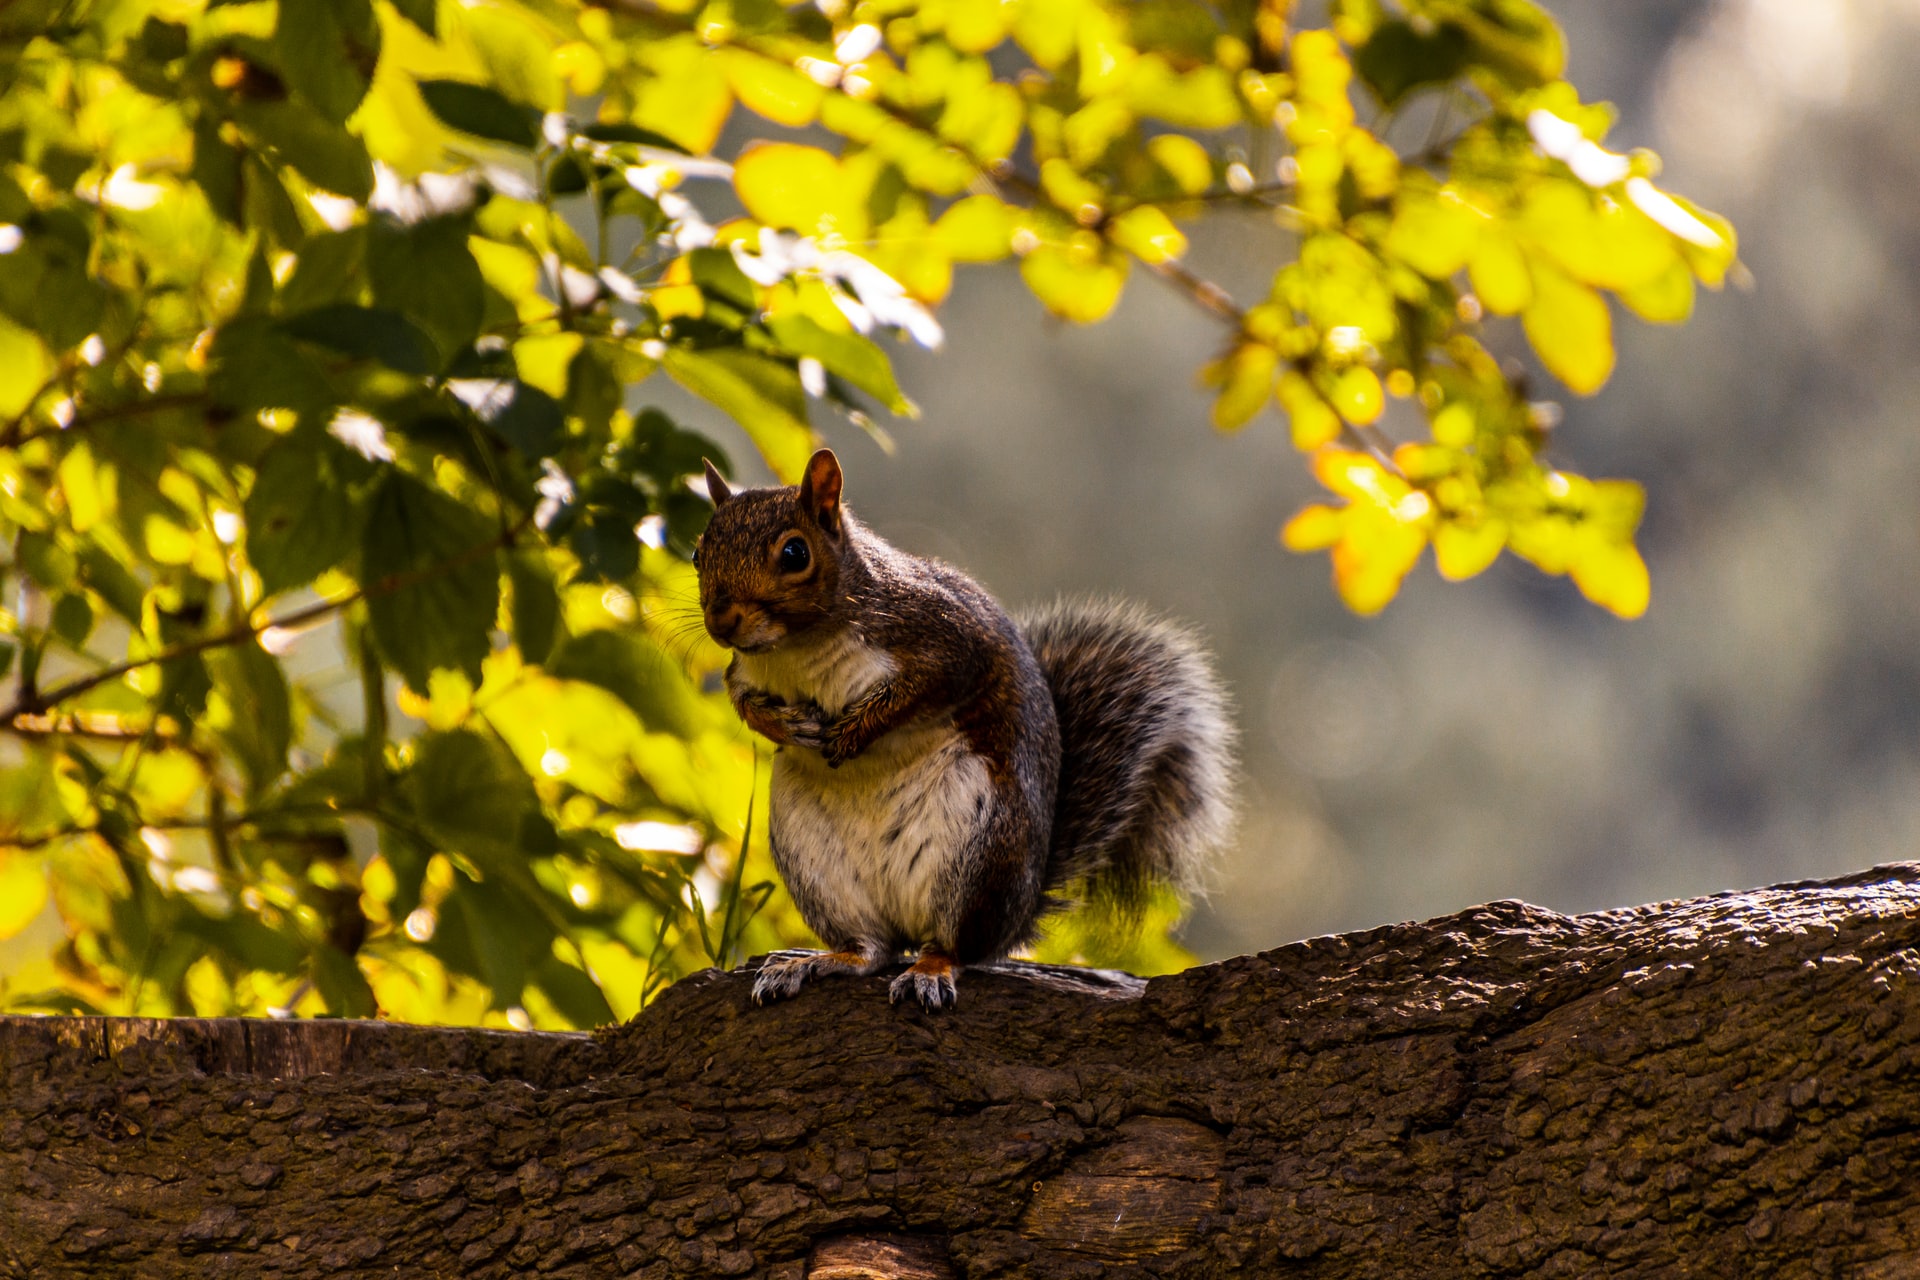 Dublin Park Squirrel